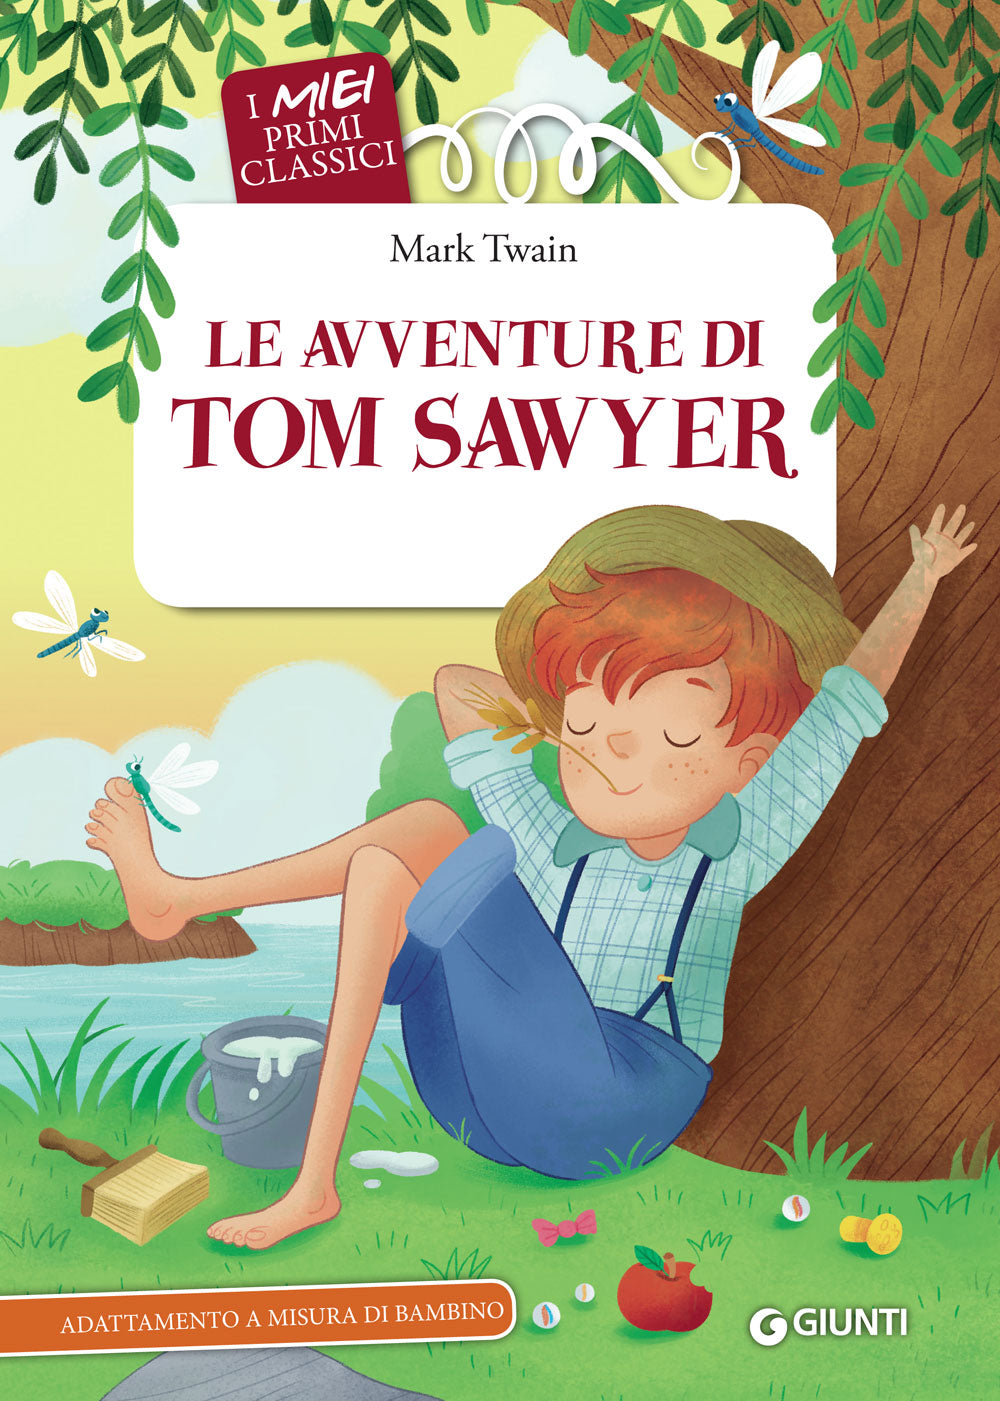 Le avventure di Tom Sawyer::Adattamento a misura di bambino